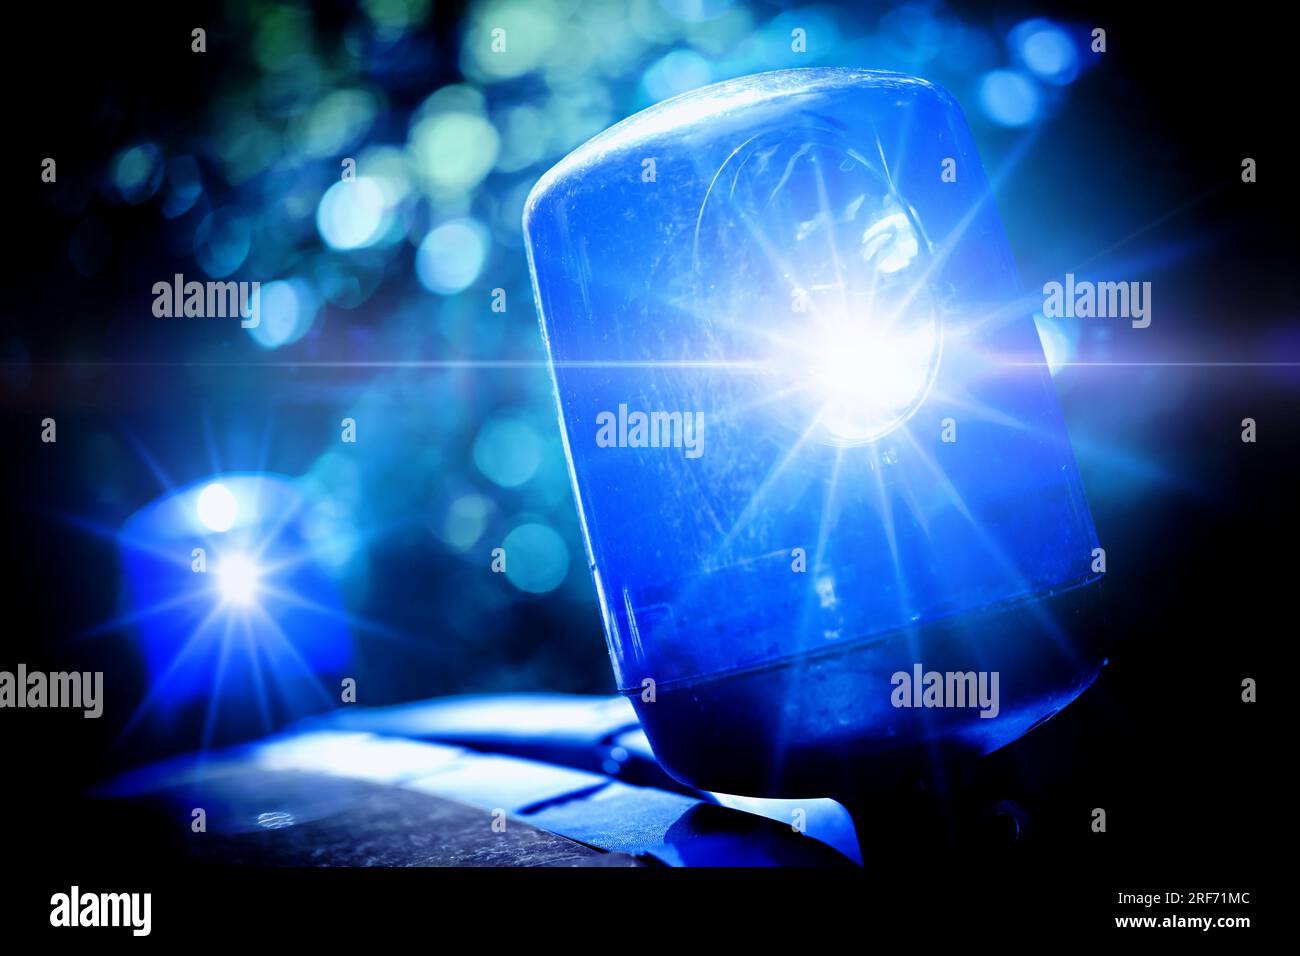 FOTOMONTAGE, Polizei mit Blaulicht, Symbolfoto Polizeieinsatz Stock Photo